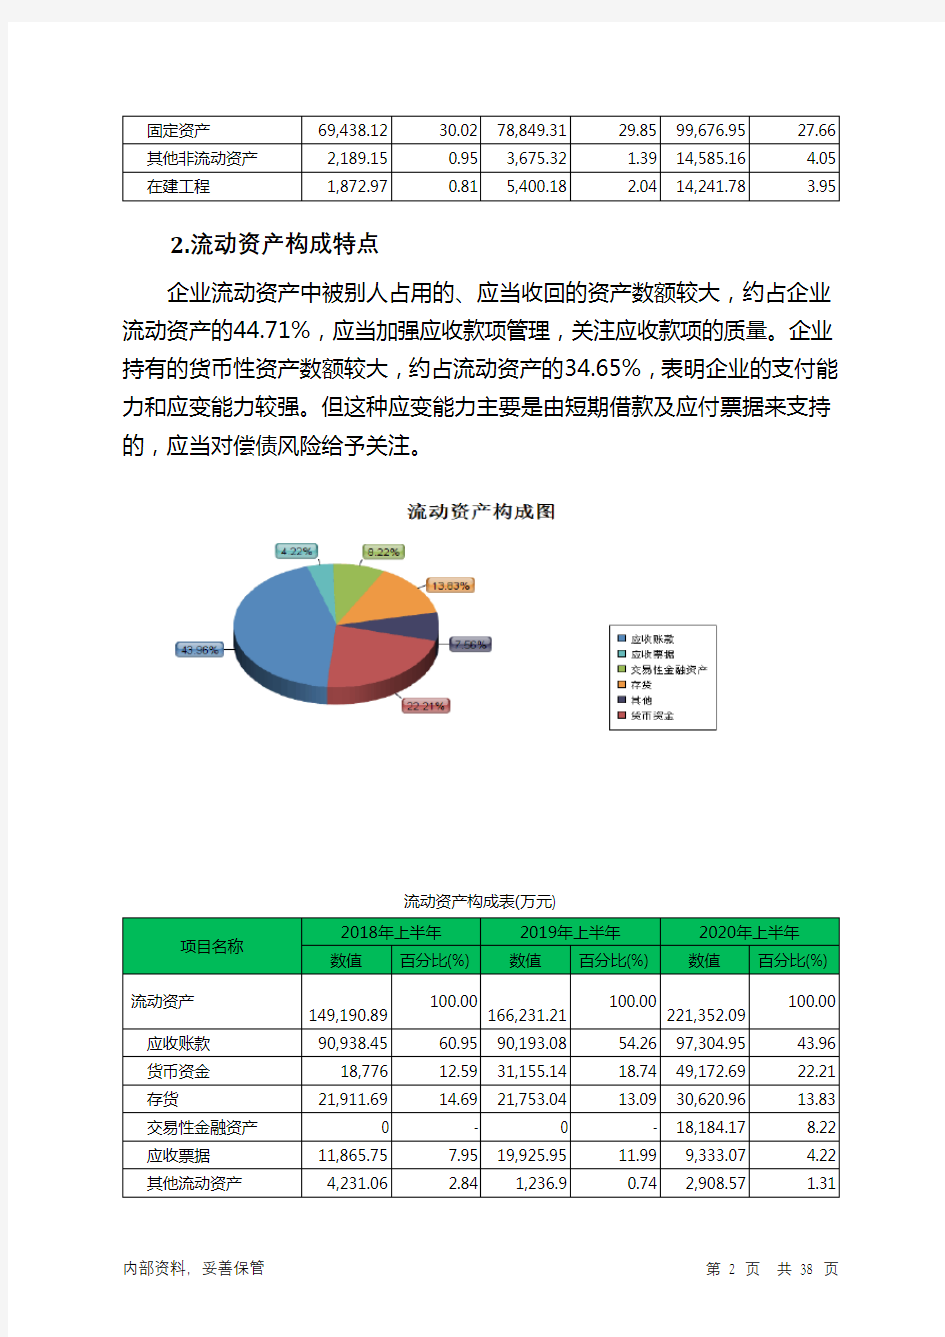 弘信电子2020年上半年财务分析详细报告